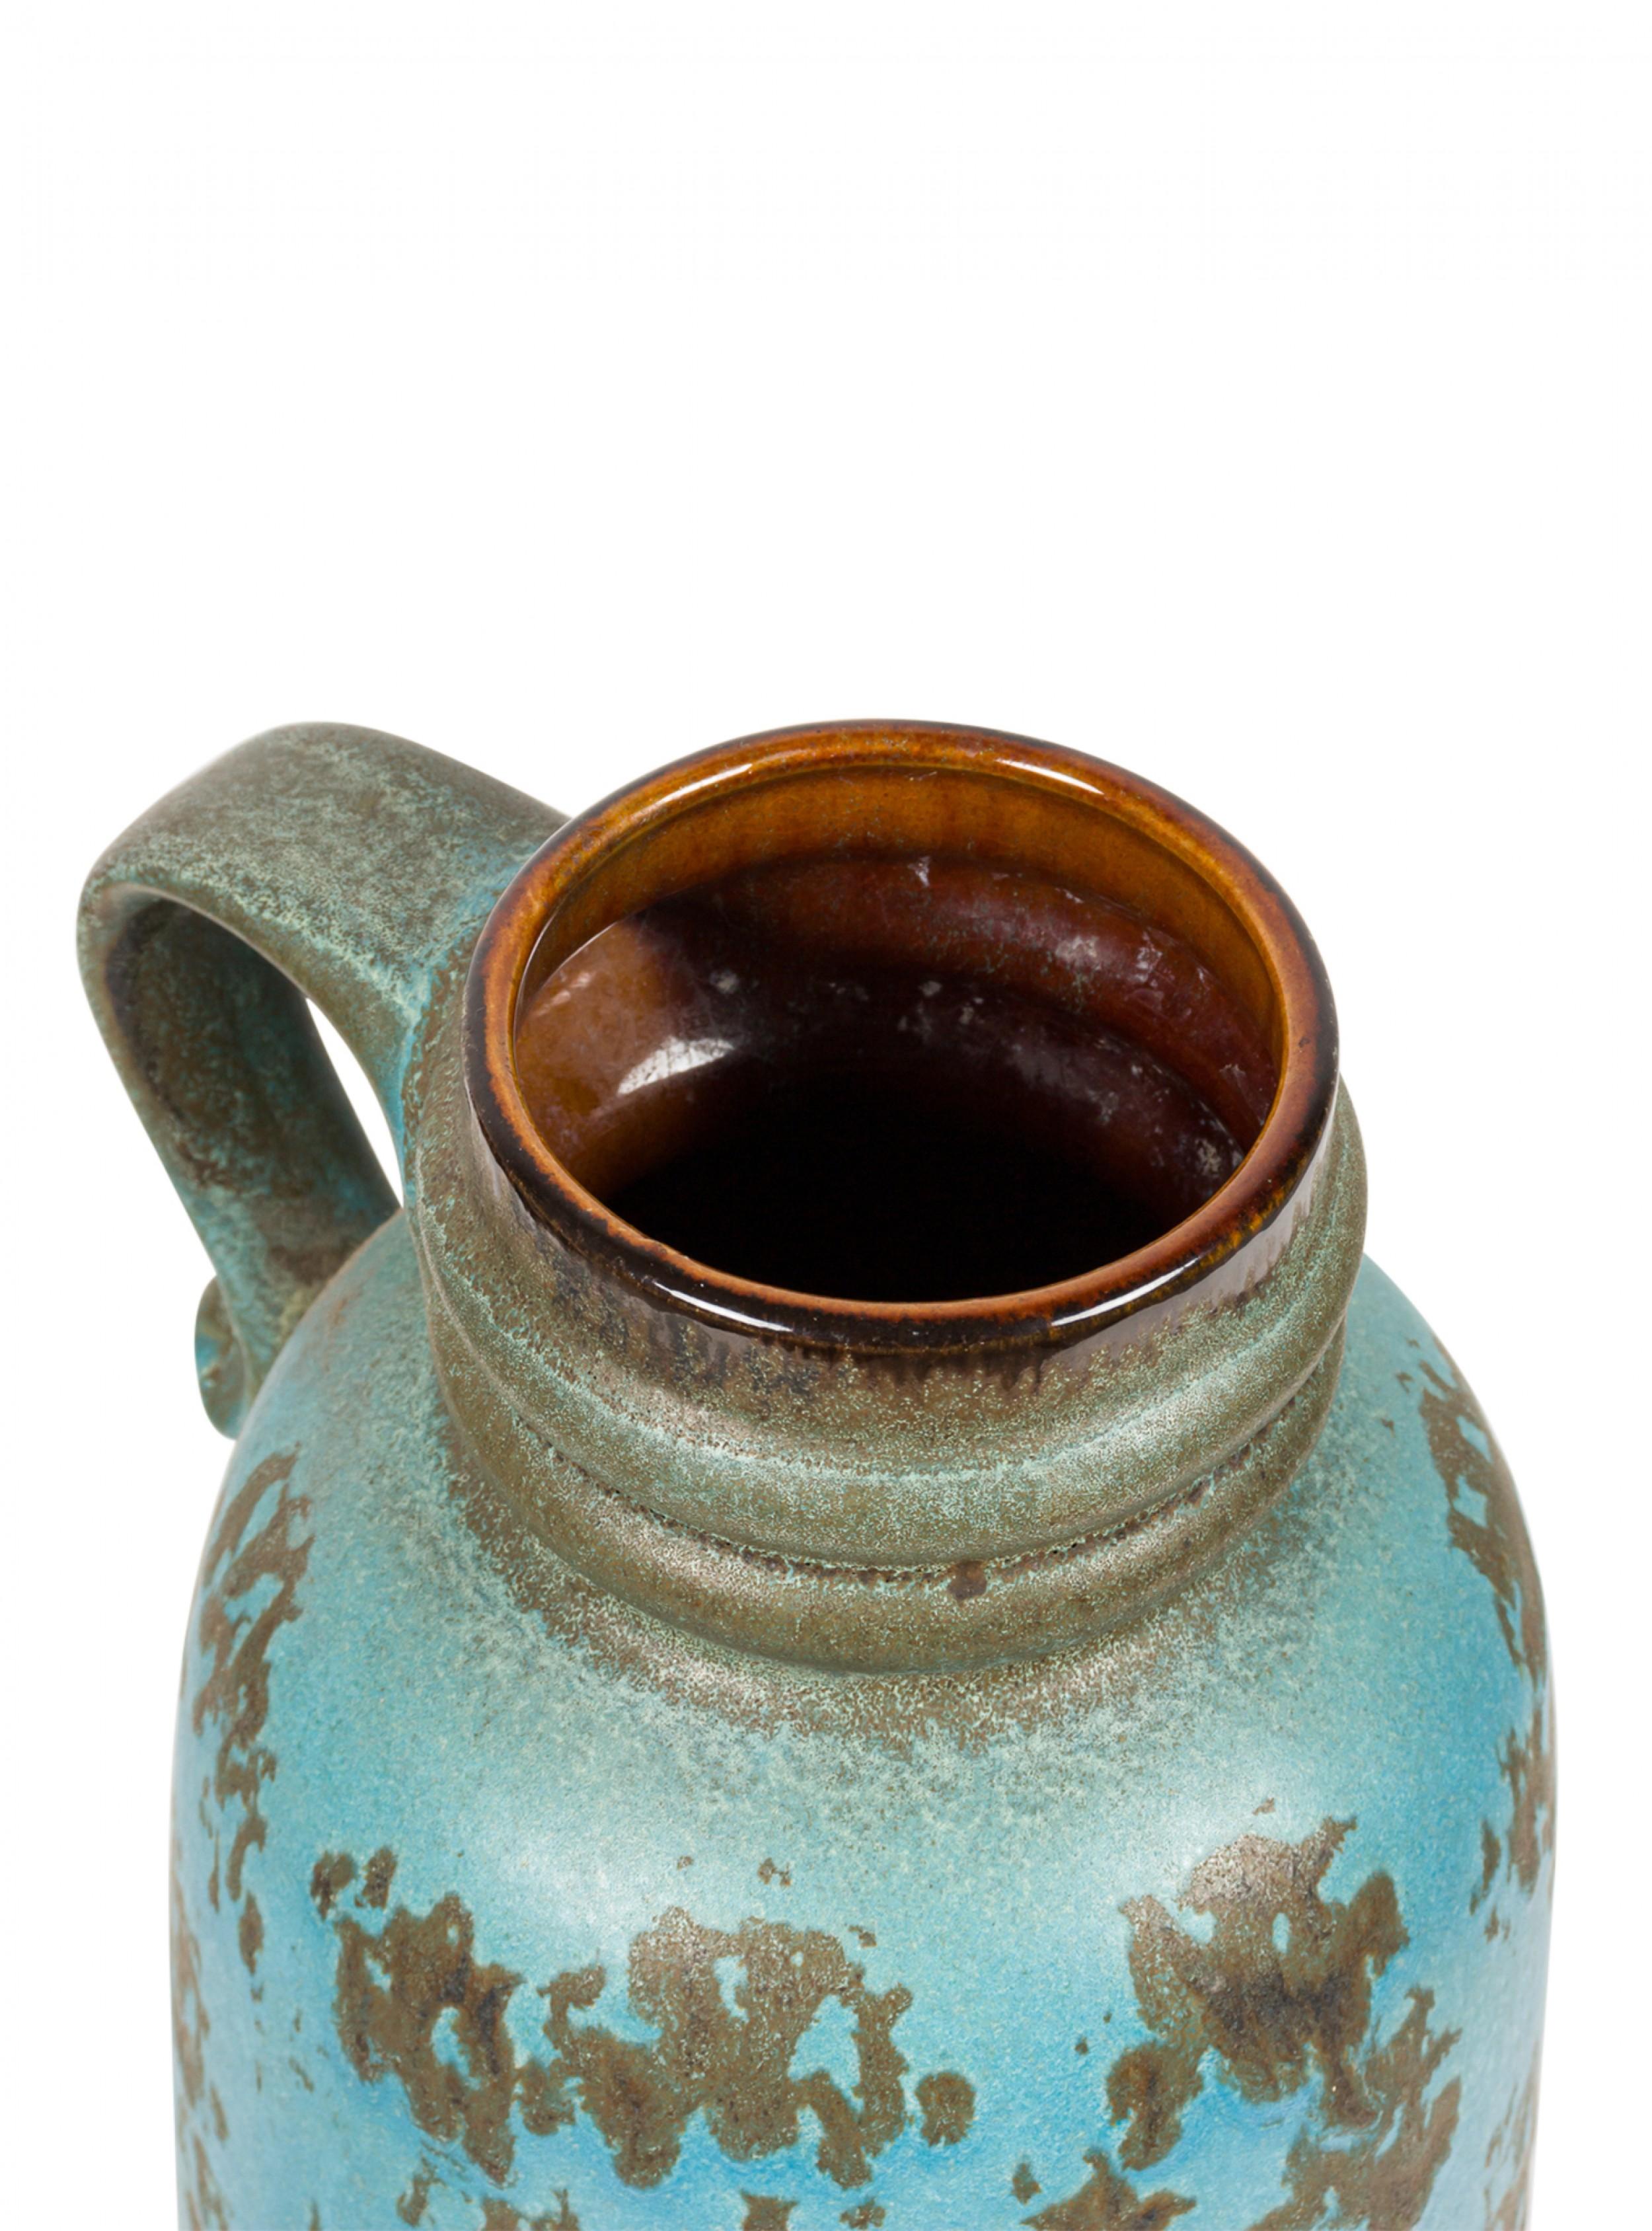 Vase cylindrique arrondi en céramique de l'Allemagne de l'Ouest, datant du milieu du siècle dernier, avec un rebord à deux bords et une glaçure à motifs de taches sarcelles et grises/vertes. (marque sur le fond, JASBA 123435).
  